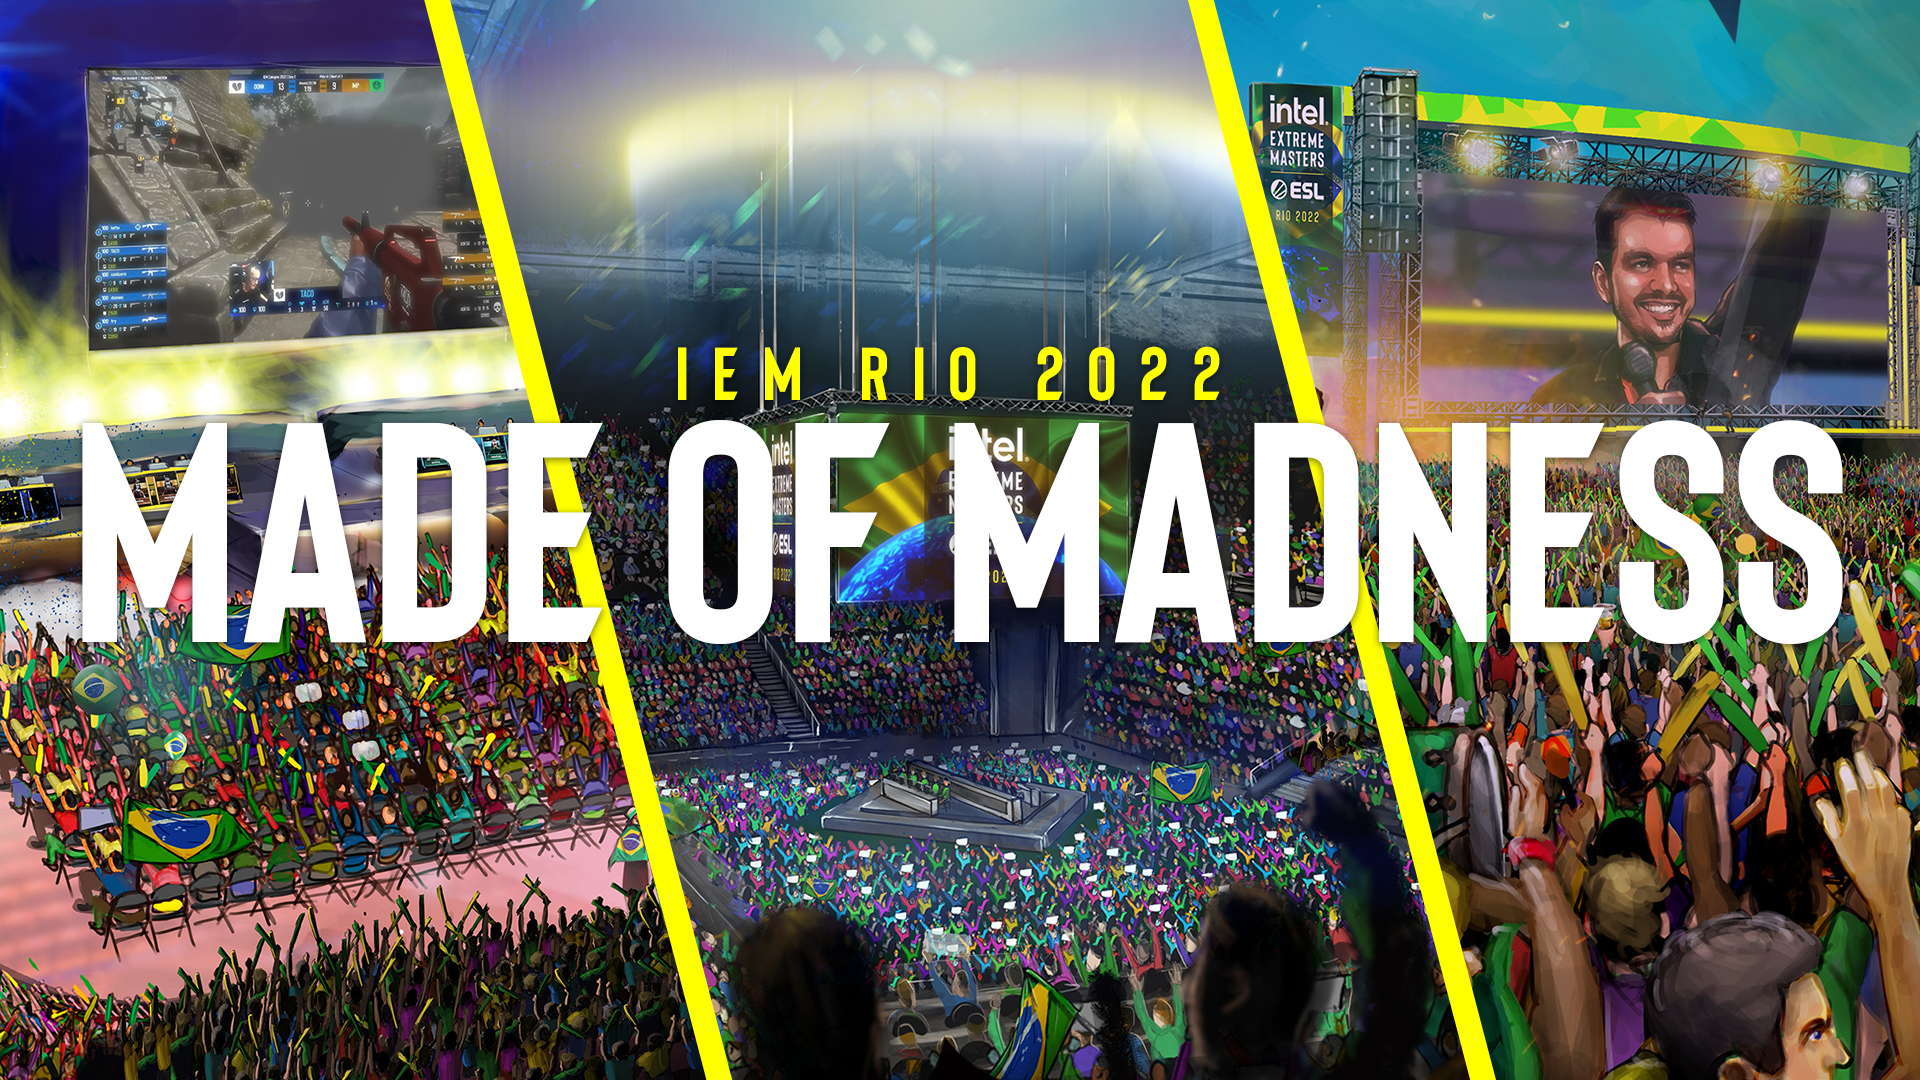 IEM Rio Major CS:GO 2022: Spielstände, Tabellen und Ergebnisse